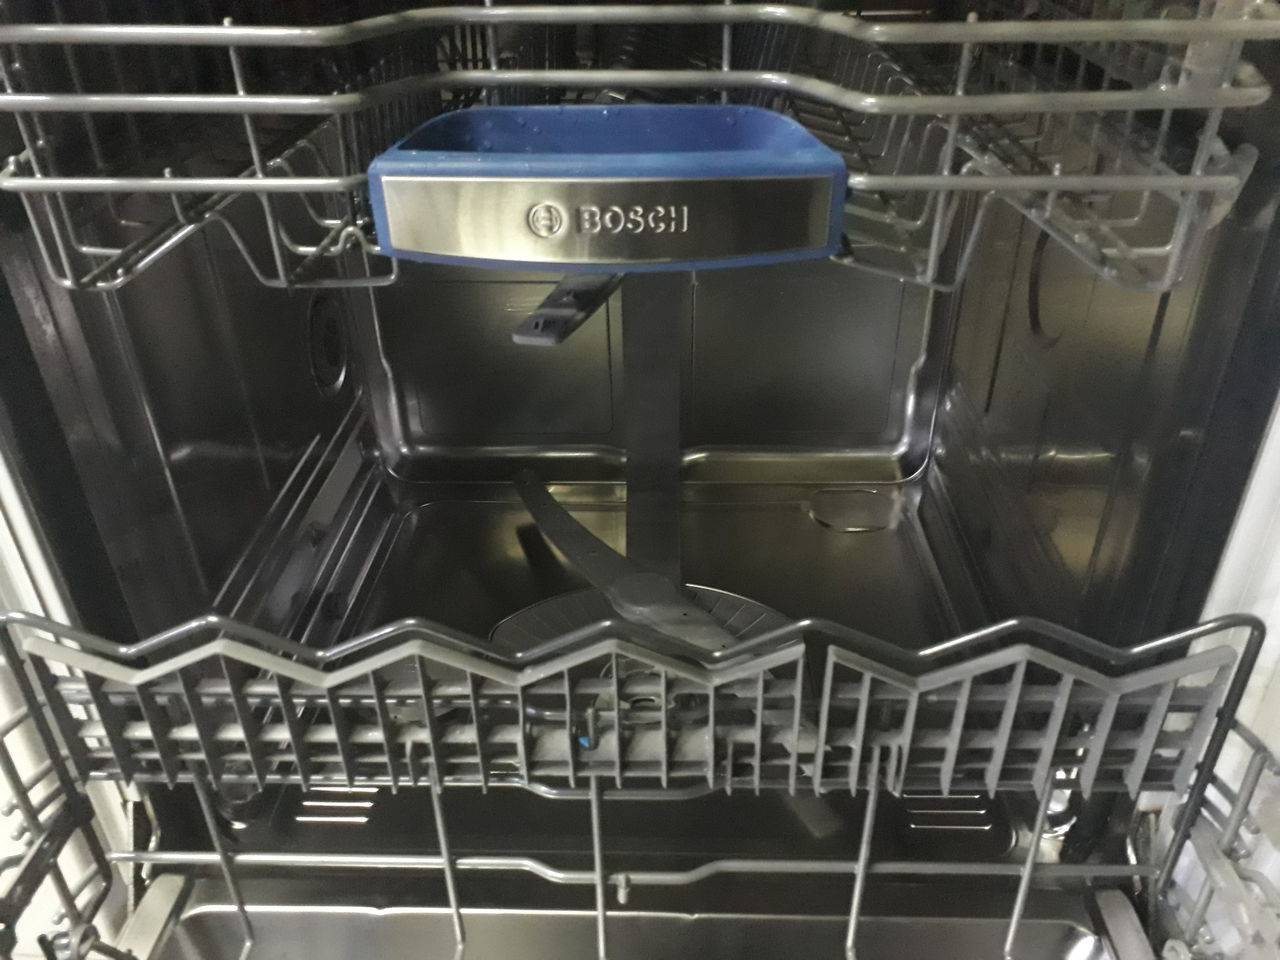 Посудомоечная машина рейтинг цена качество 60. Посудомоечная машина Bosch 60 см встраиваемая. Посудомойка бош 60. Поддон посудомоечной машины Bosch 60 см. Встроенная посудомоечная машина 45 см Bosch.